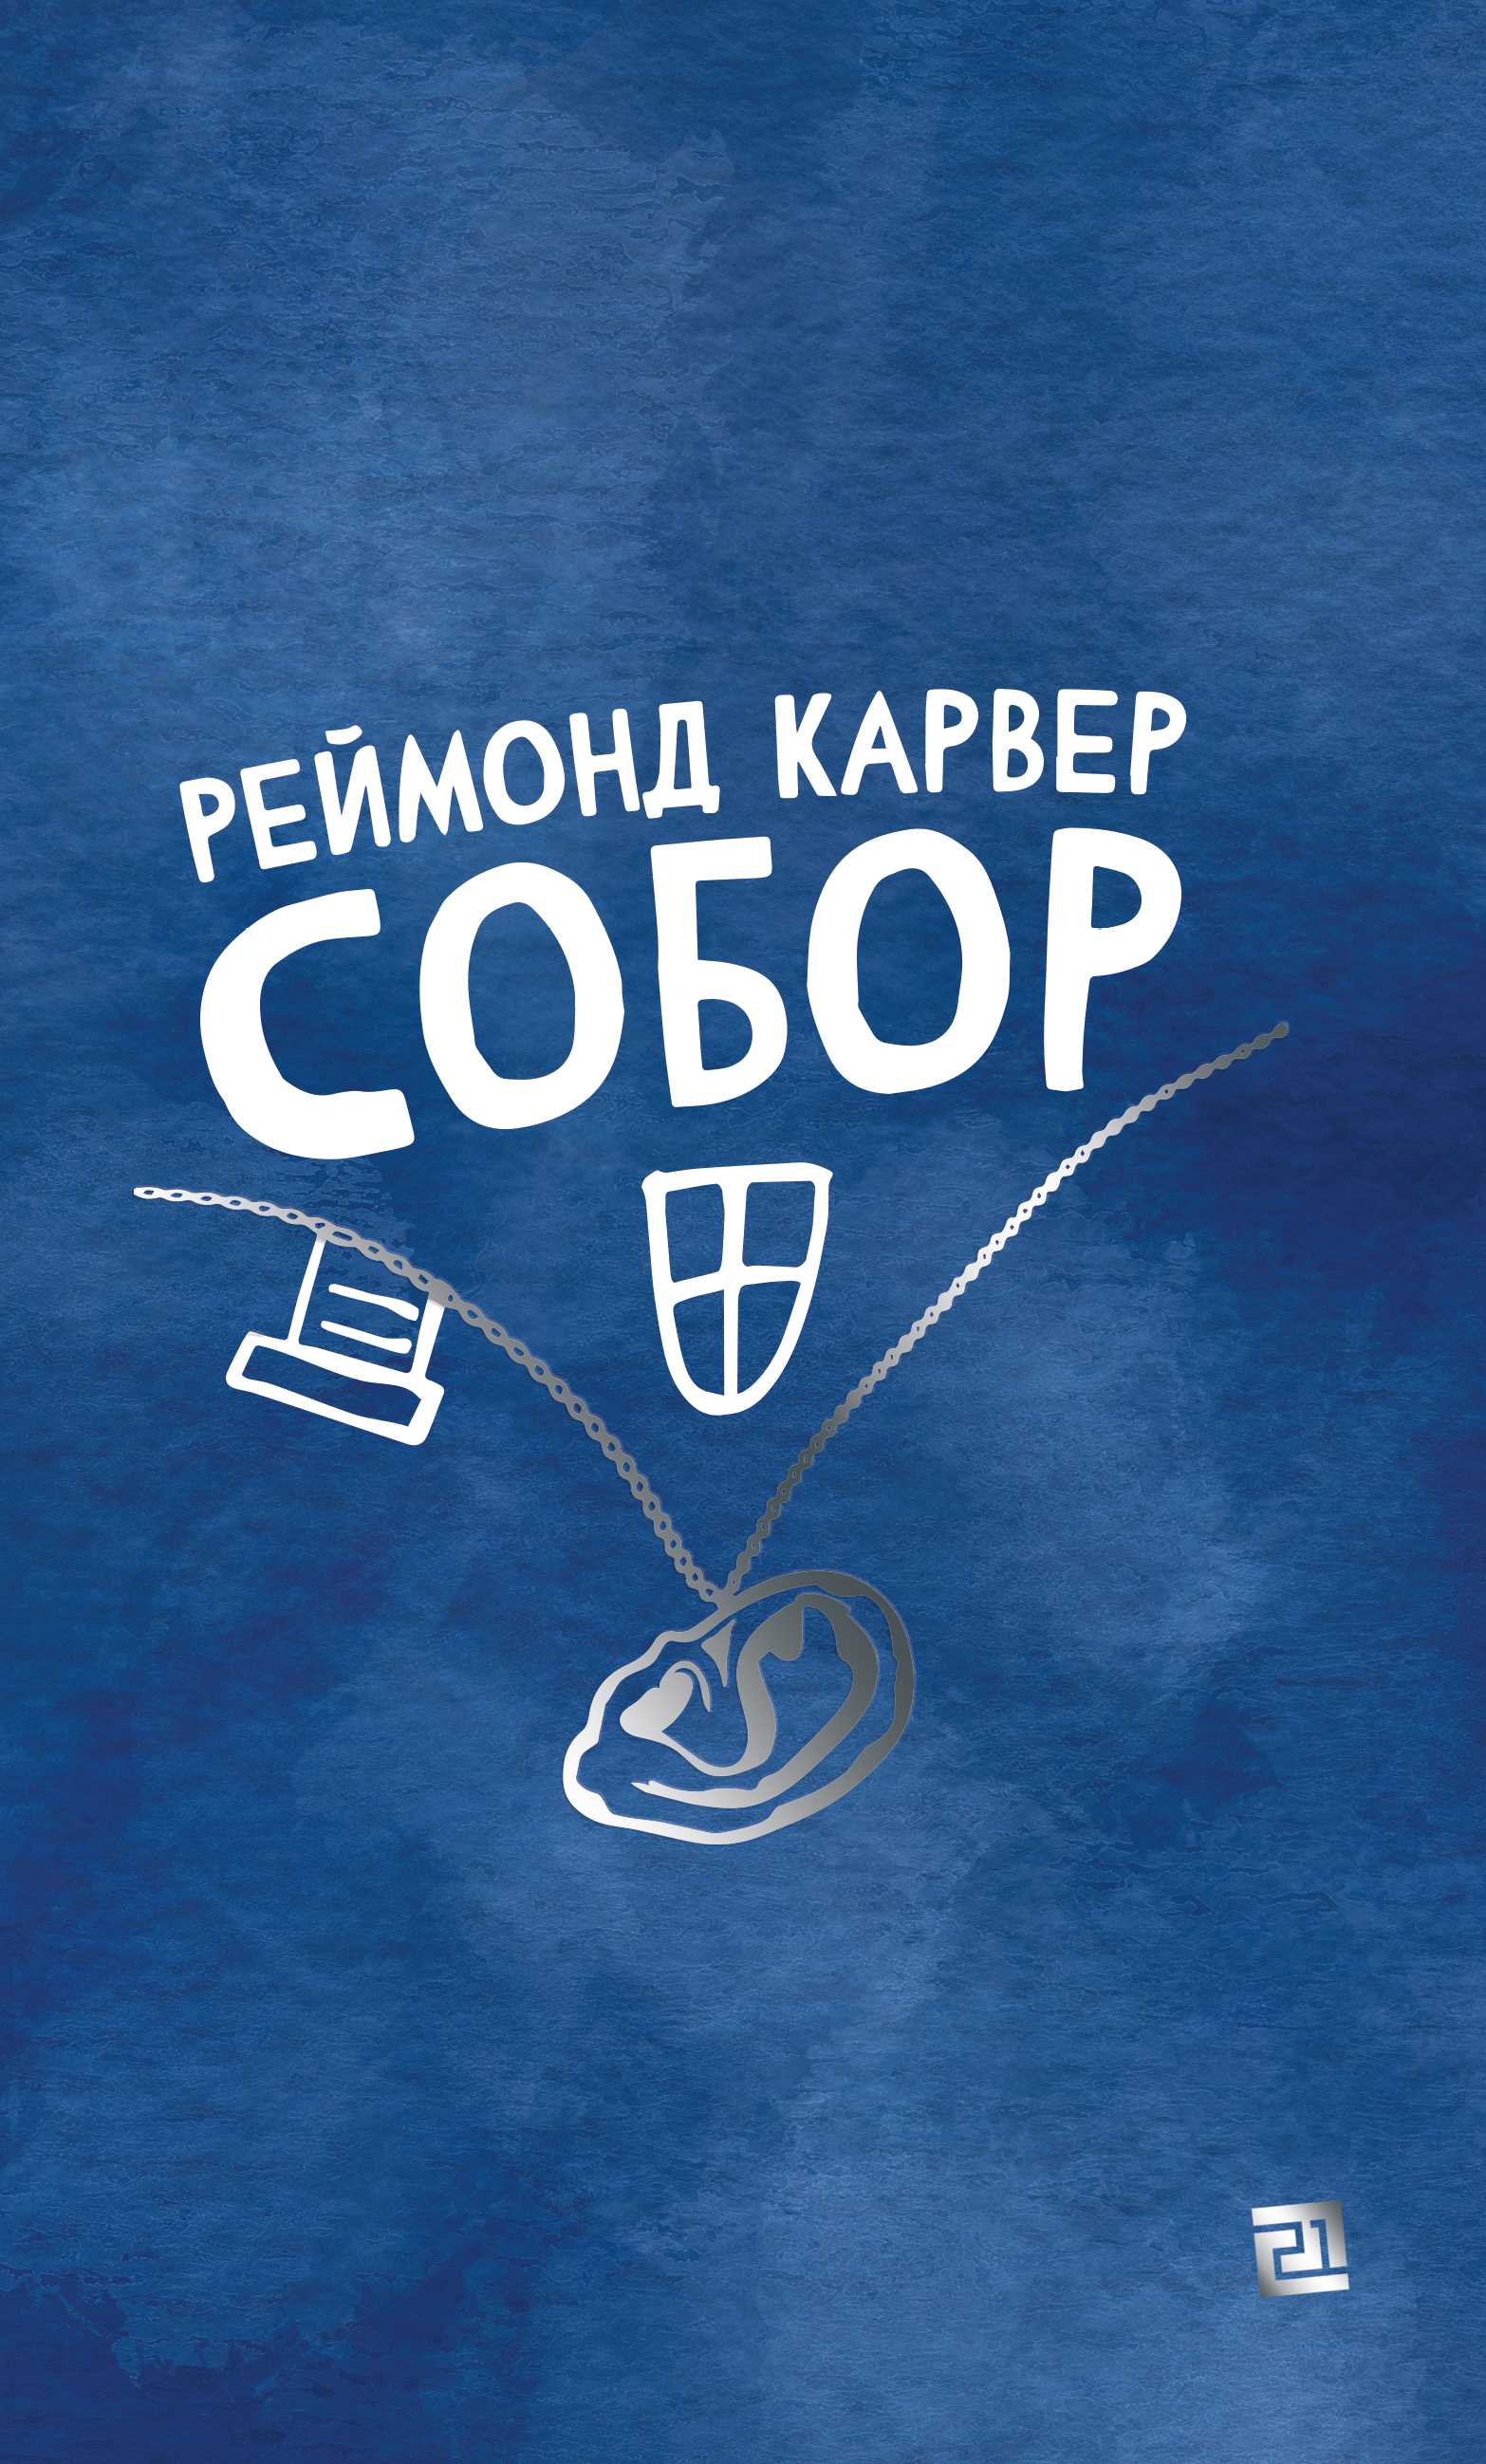 sobor 2 - Нове-цікаве: свіжі книжки українських видавництв